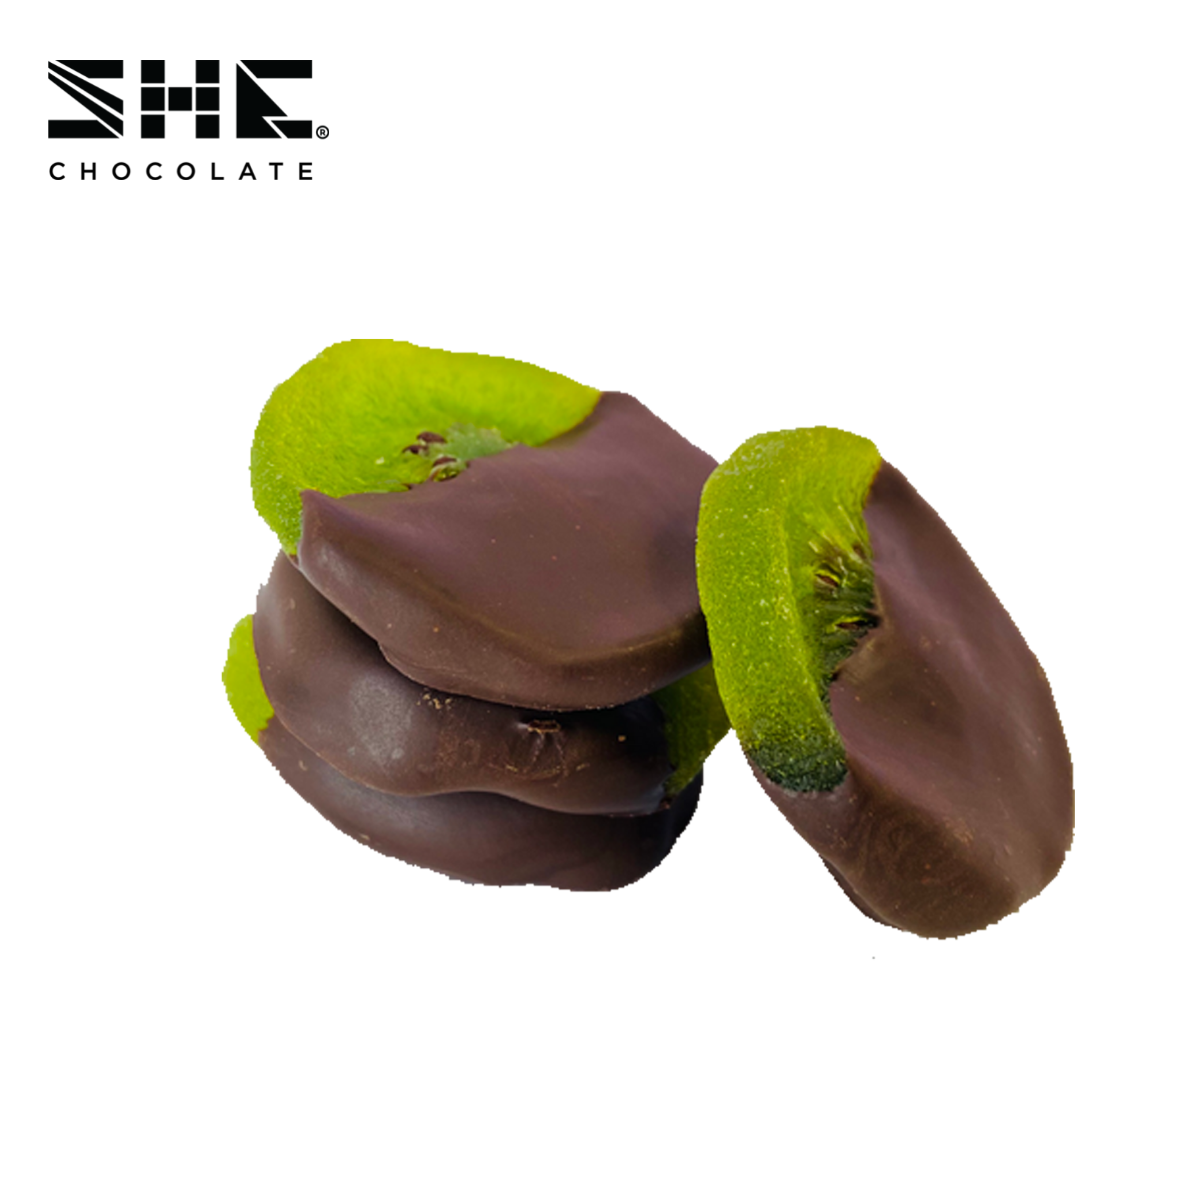 Kiwi nhúng Socola - Túi 500gr - SHE Chocolate - Đa dạng vị giác, tốt cho sức khỏe, bổ sung năng lượng. Quà tặng người thân, dịp lễ, thích hợp ăn vặt